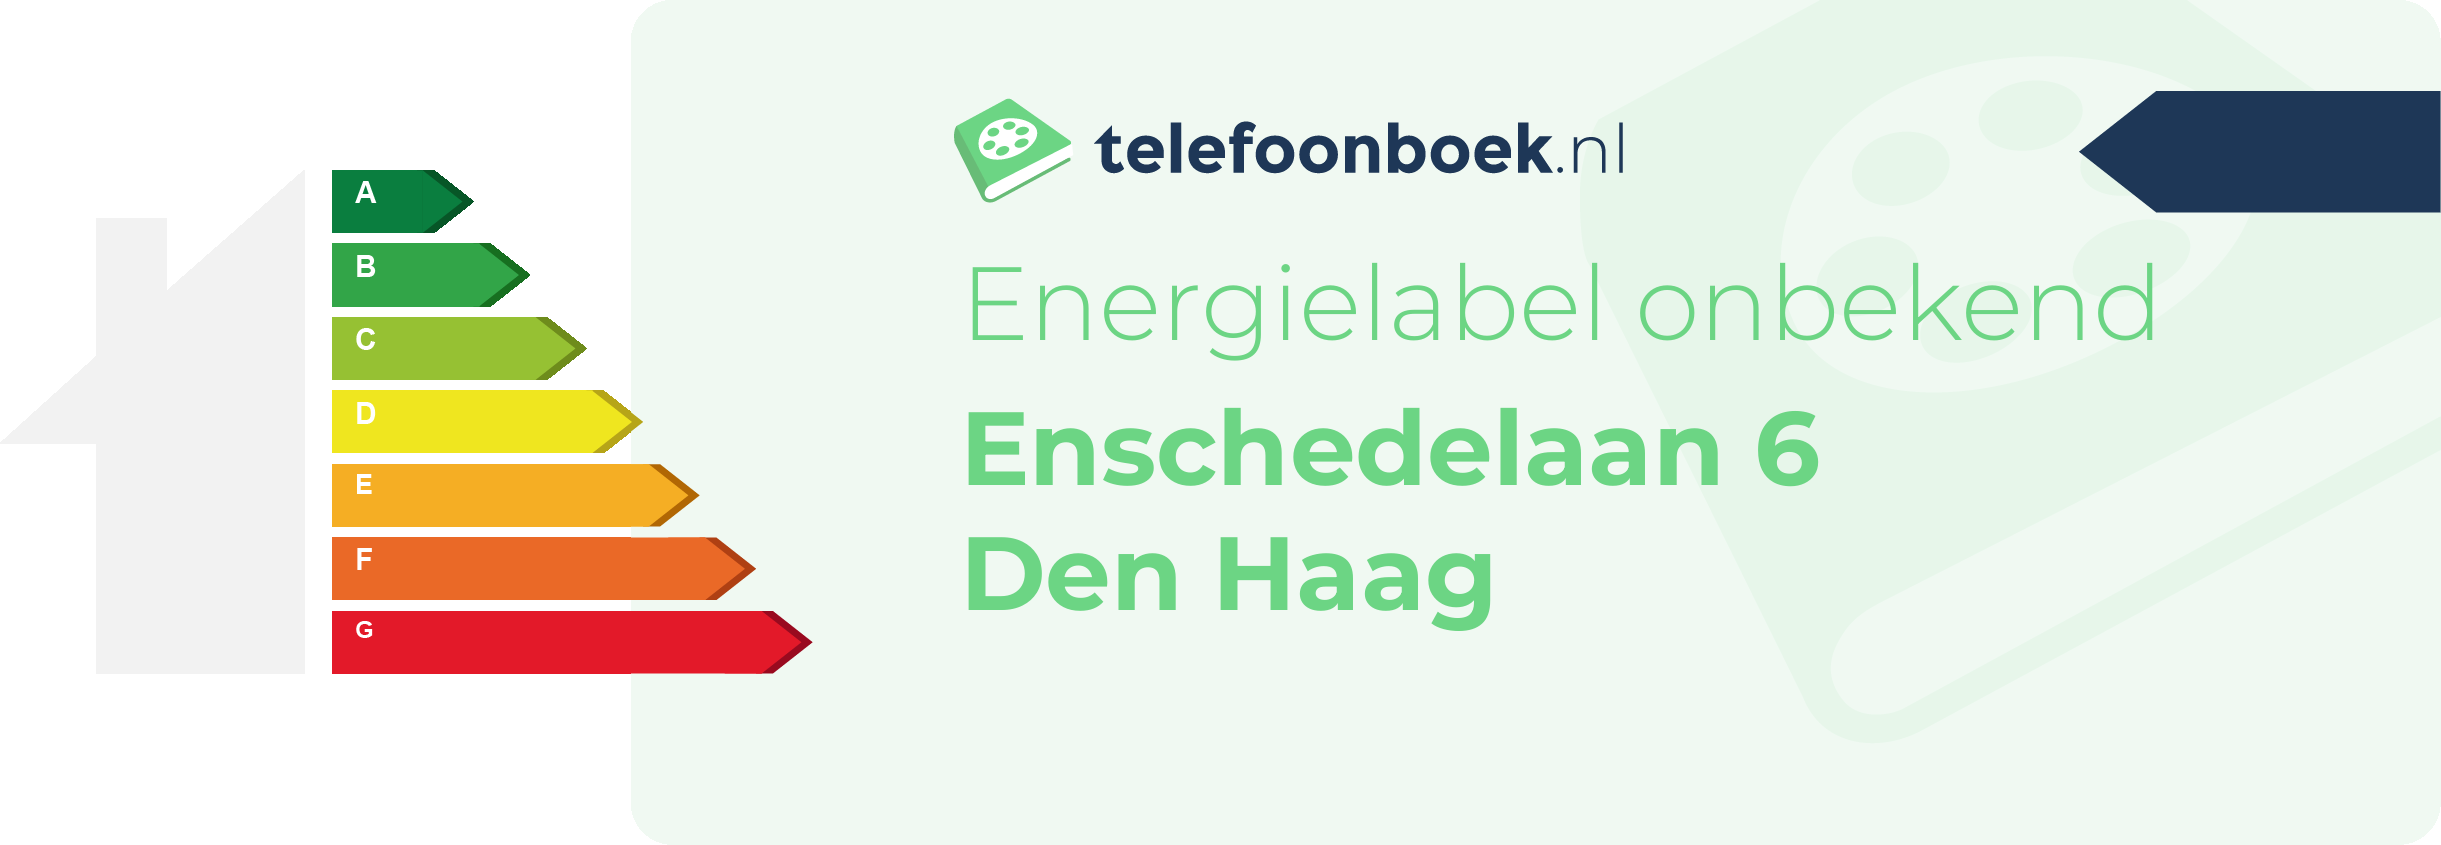 Energielabel Enschedelaan 6 Den Haag